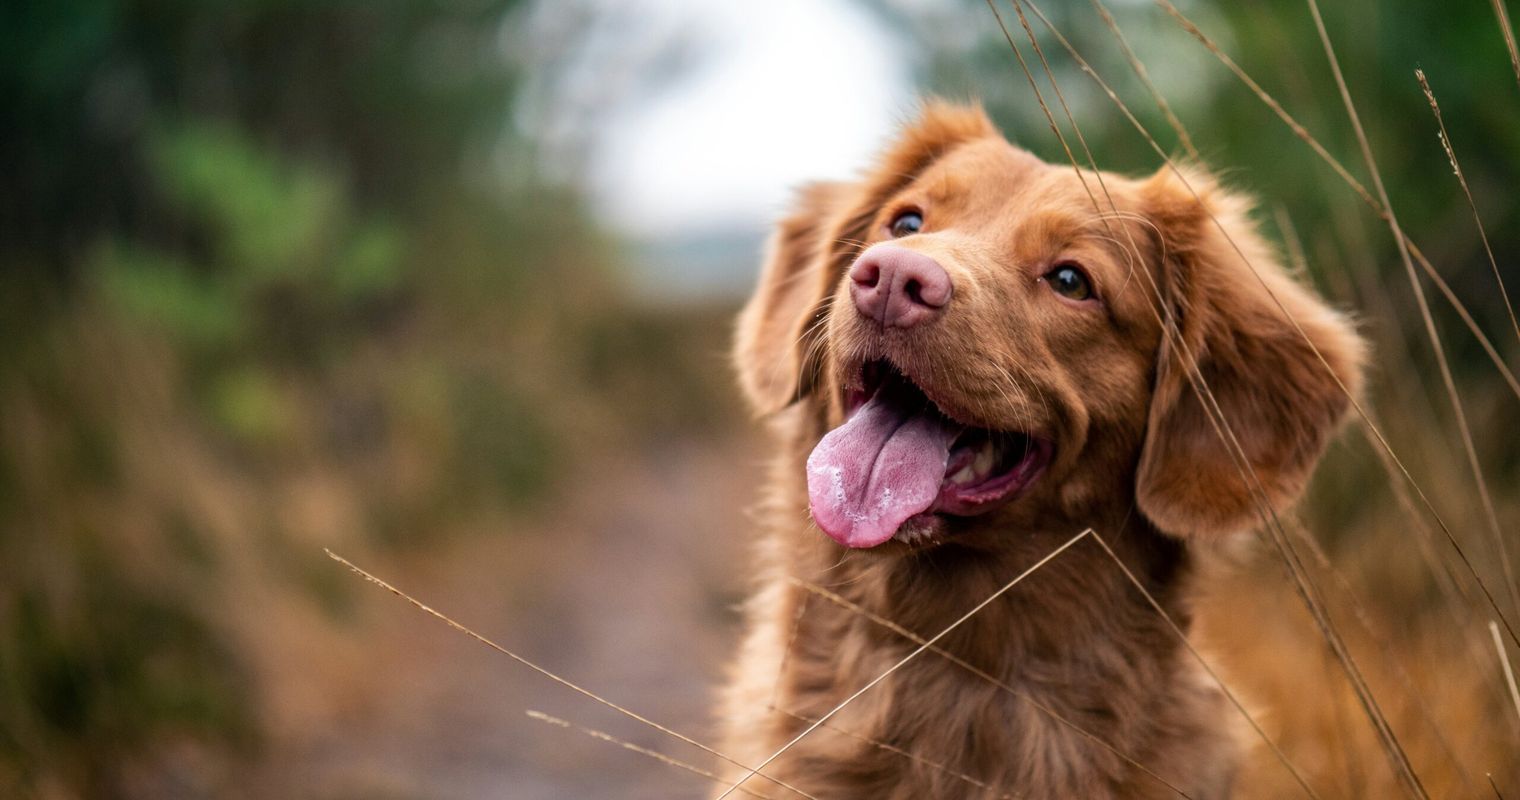 Kommission will Therapiehunde nicht von Hundesteuer befreien